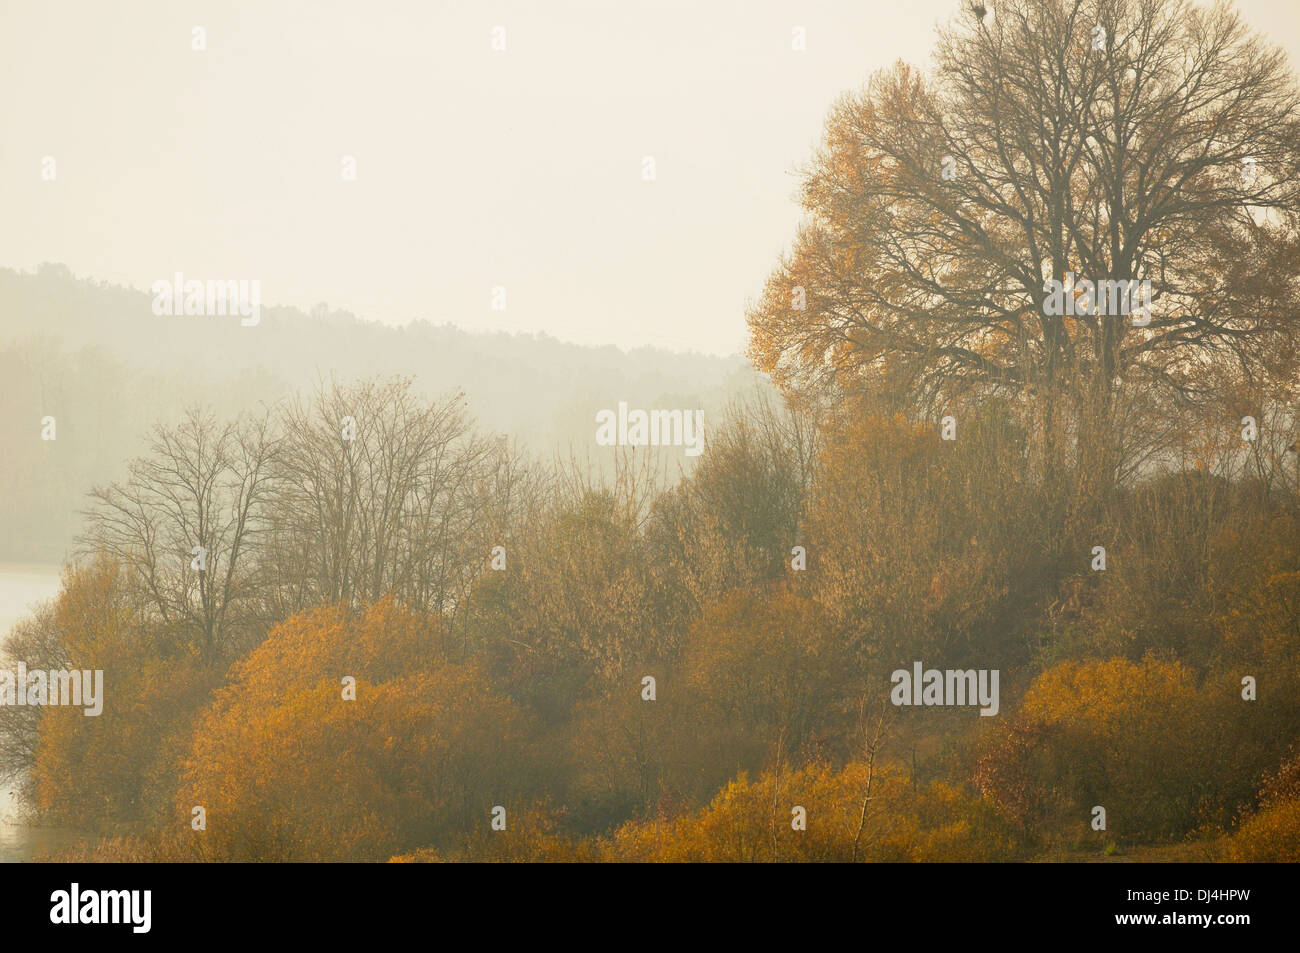 Trüben Tag im Winter, mit Eichen im Nebel, am Rande eines Sees in Arjuzanx. Nationalen Jagd- und Naturschutzgebiet. Frankreich. Stockfoto